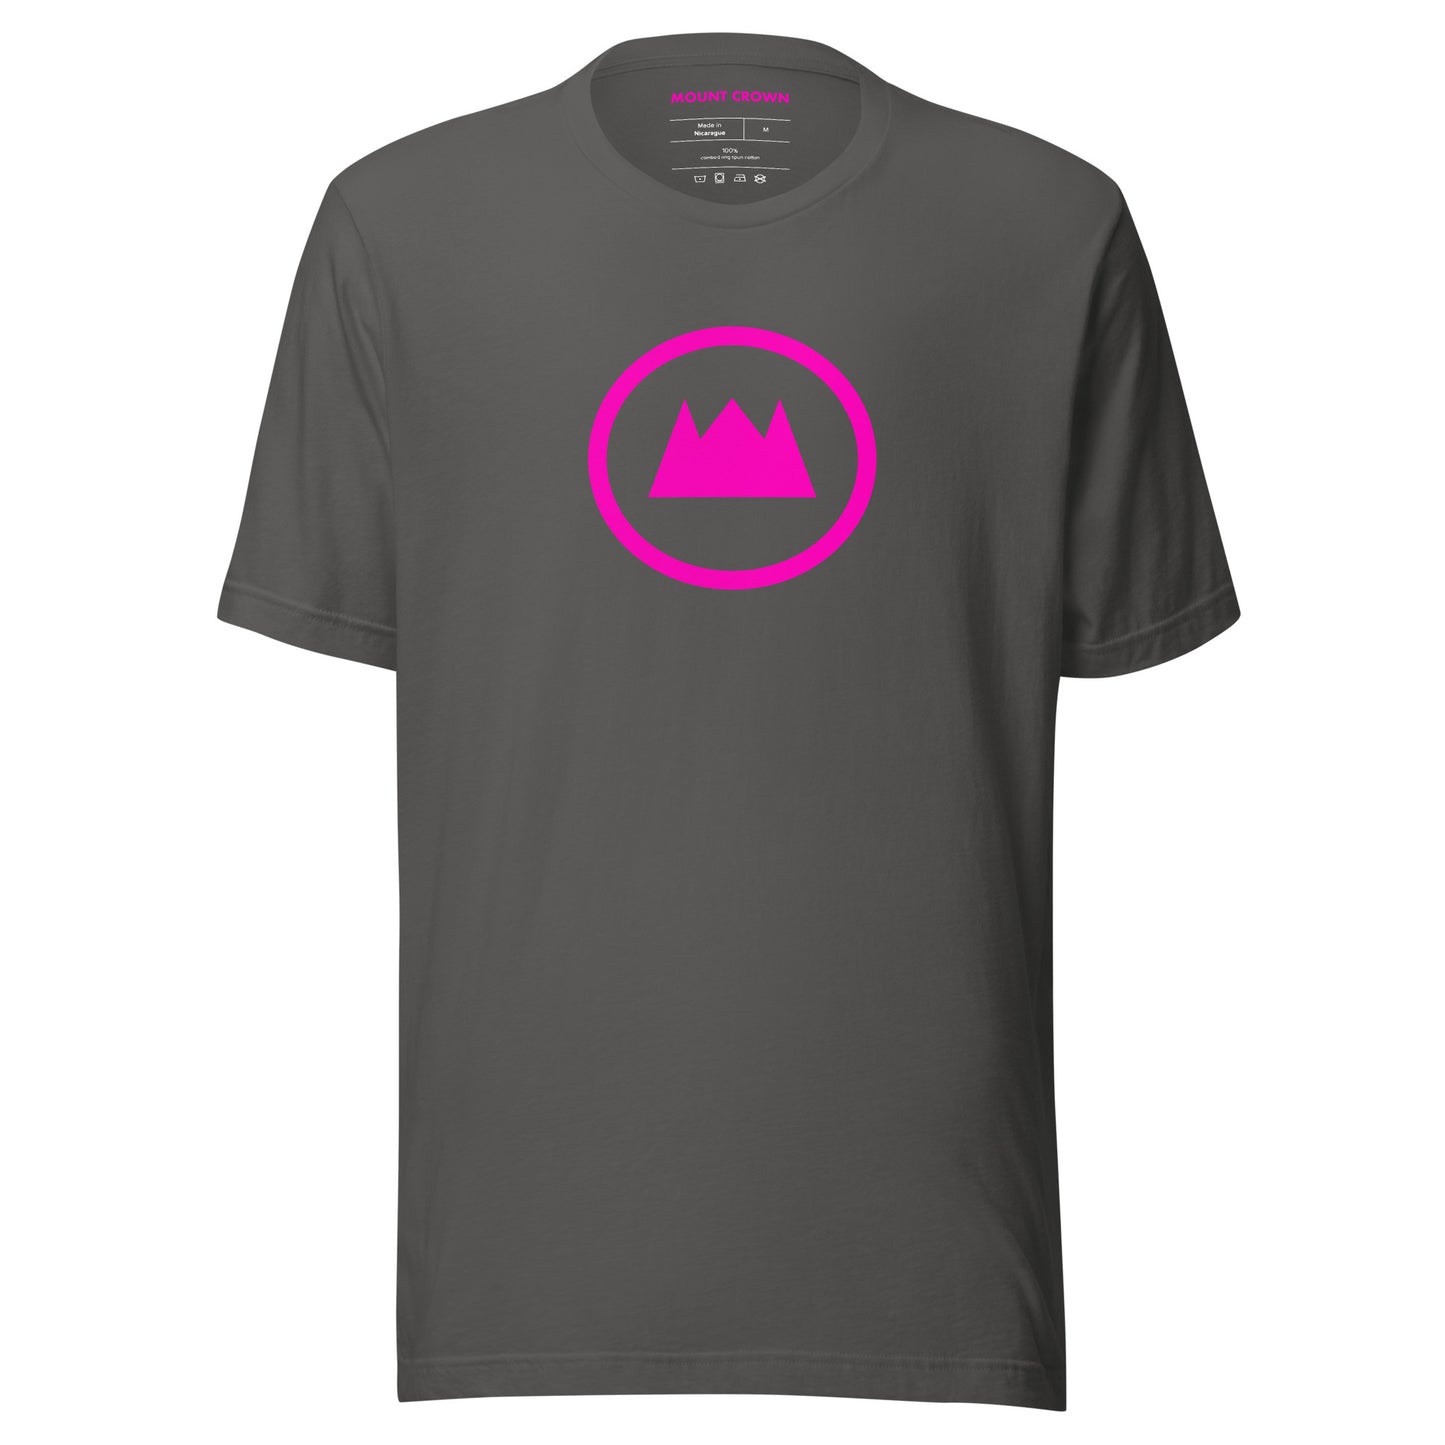 MOUNT CROWN (Pi) T-shirt